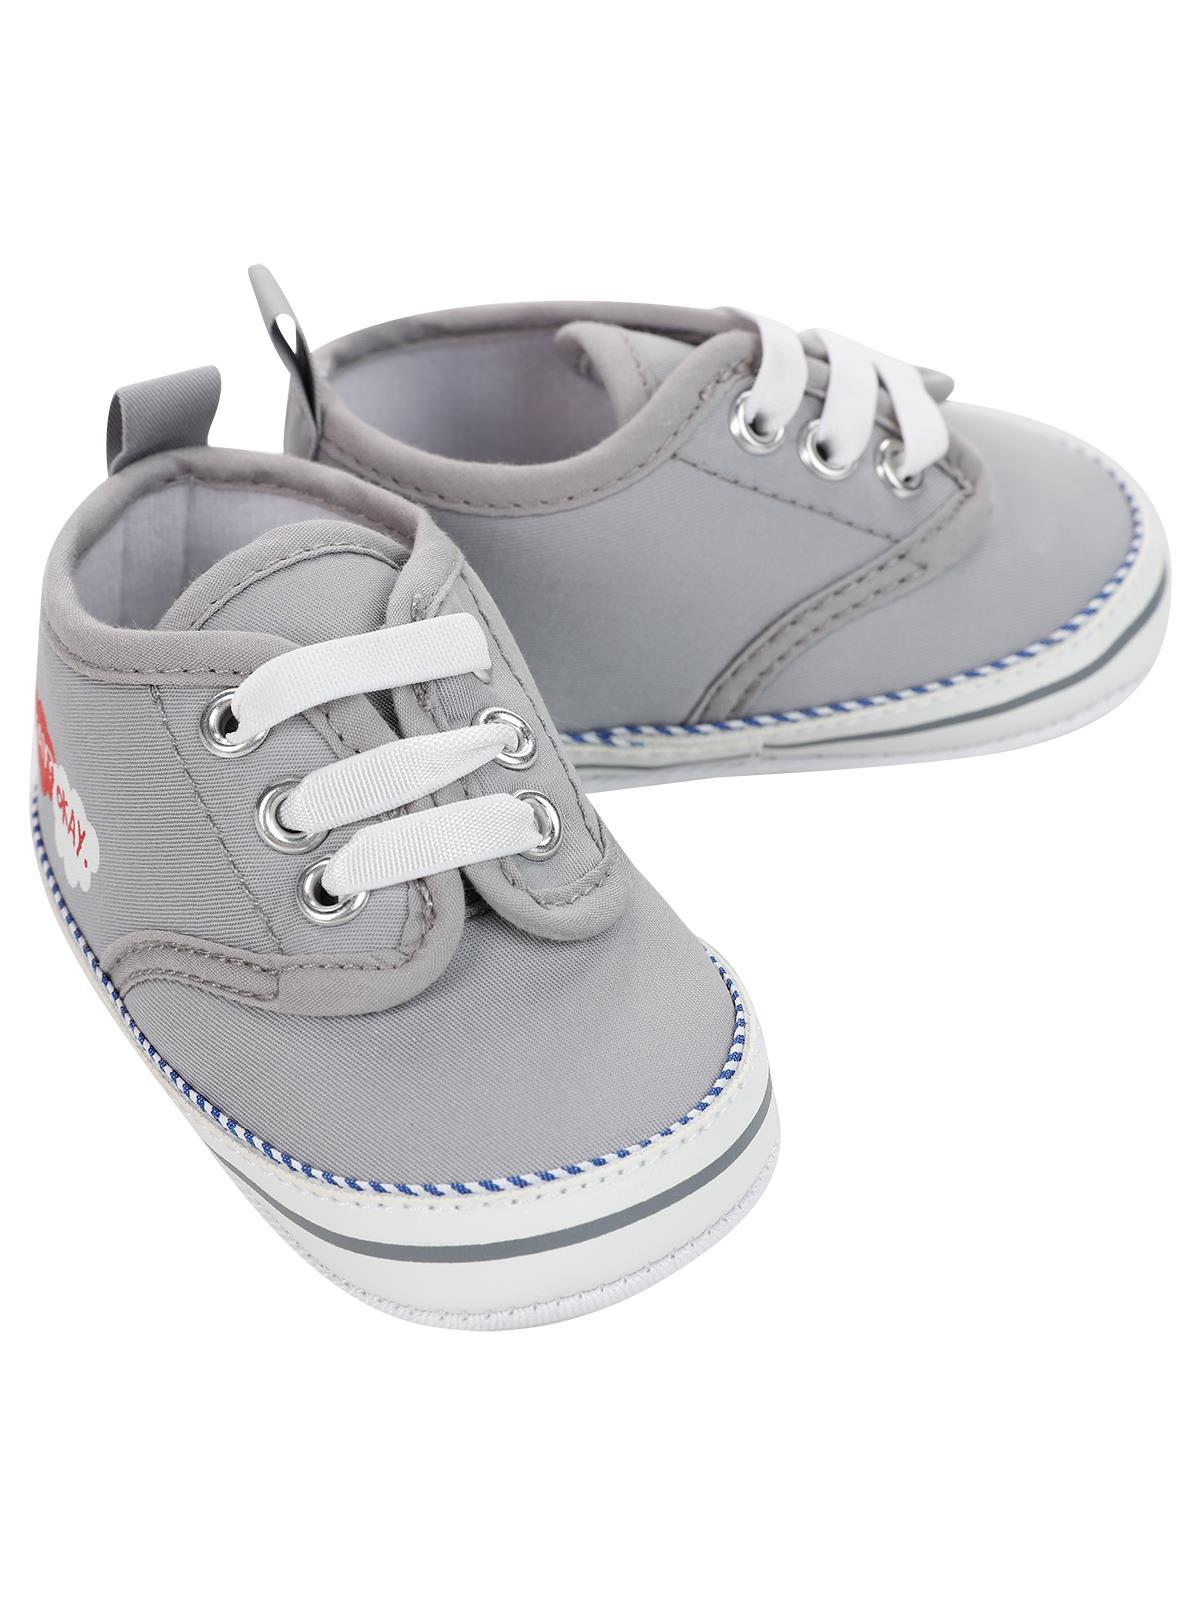 Civil Baby Erkek Bebek Patik Ayakkabı 18-20 Numara Gri